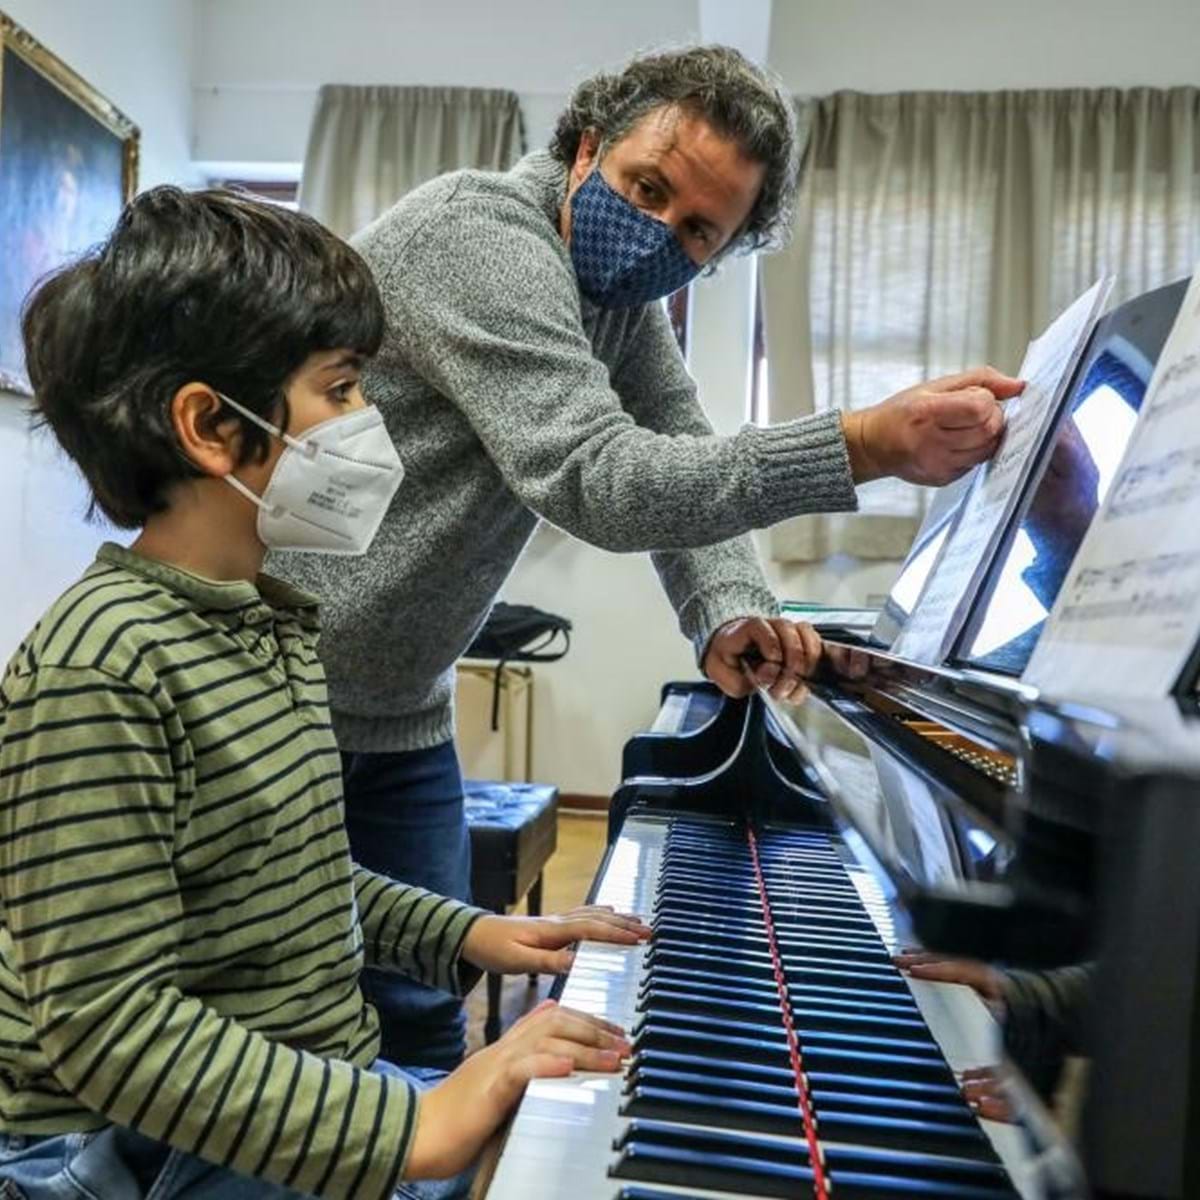 Como dar aulas de piano em Portugal